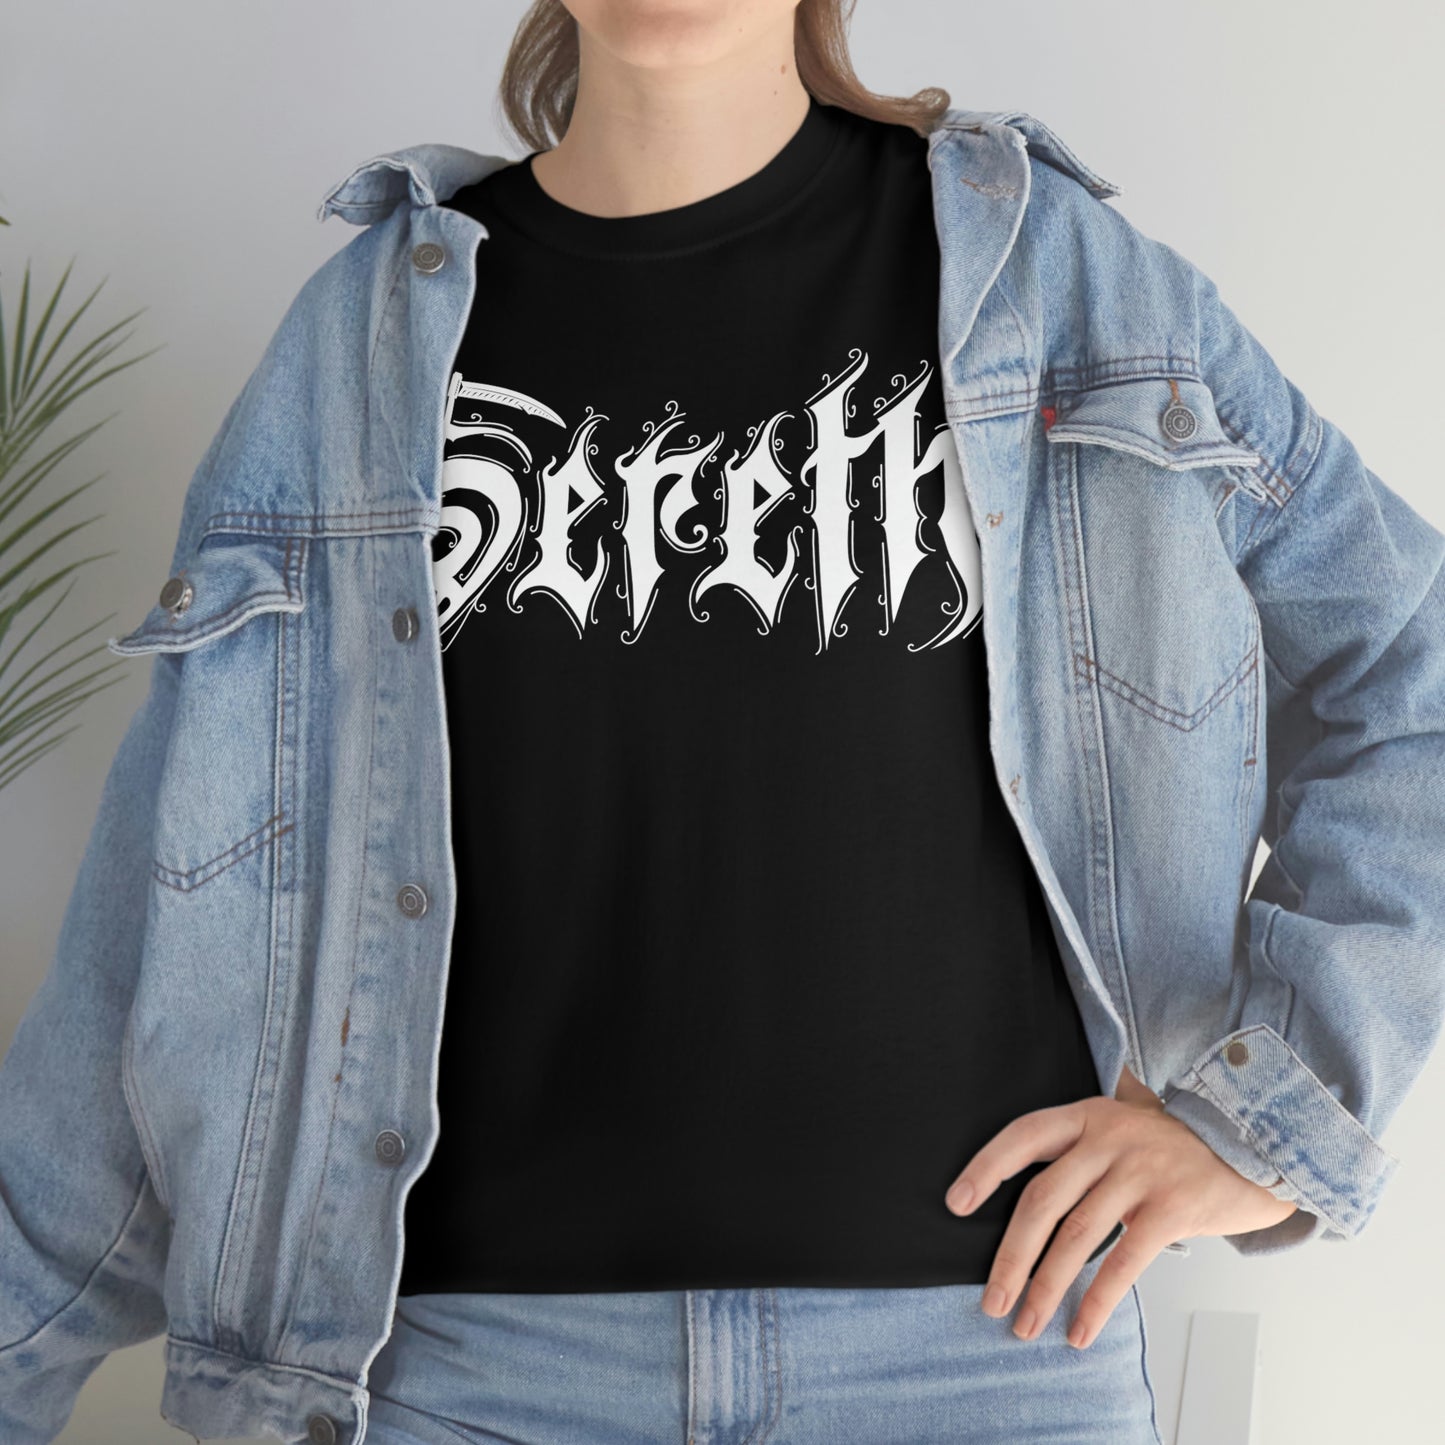 Sereth - Logo w/design